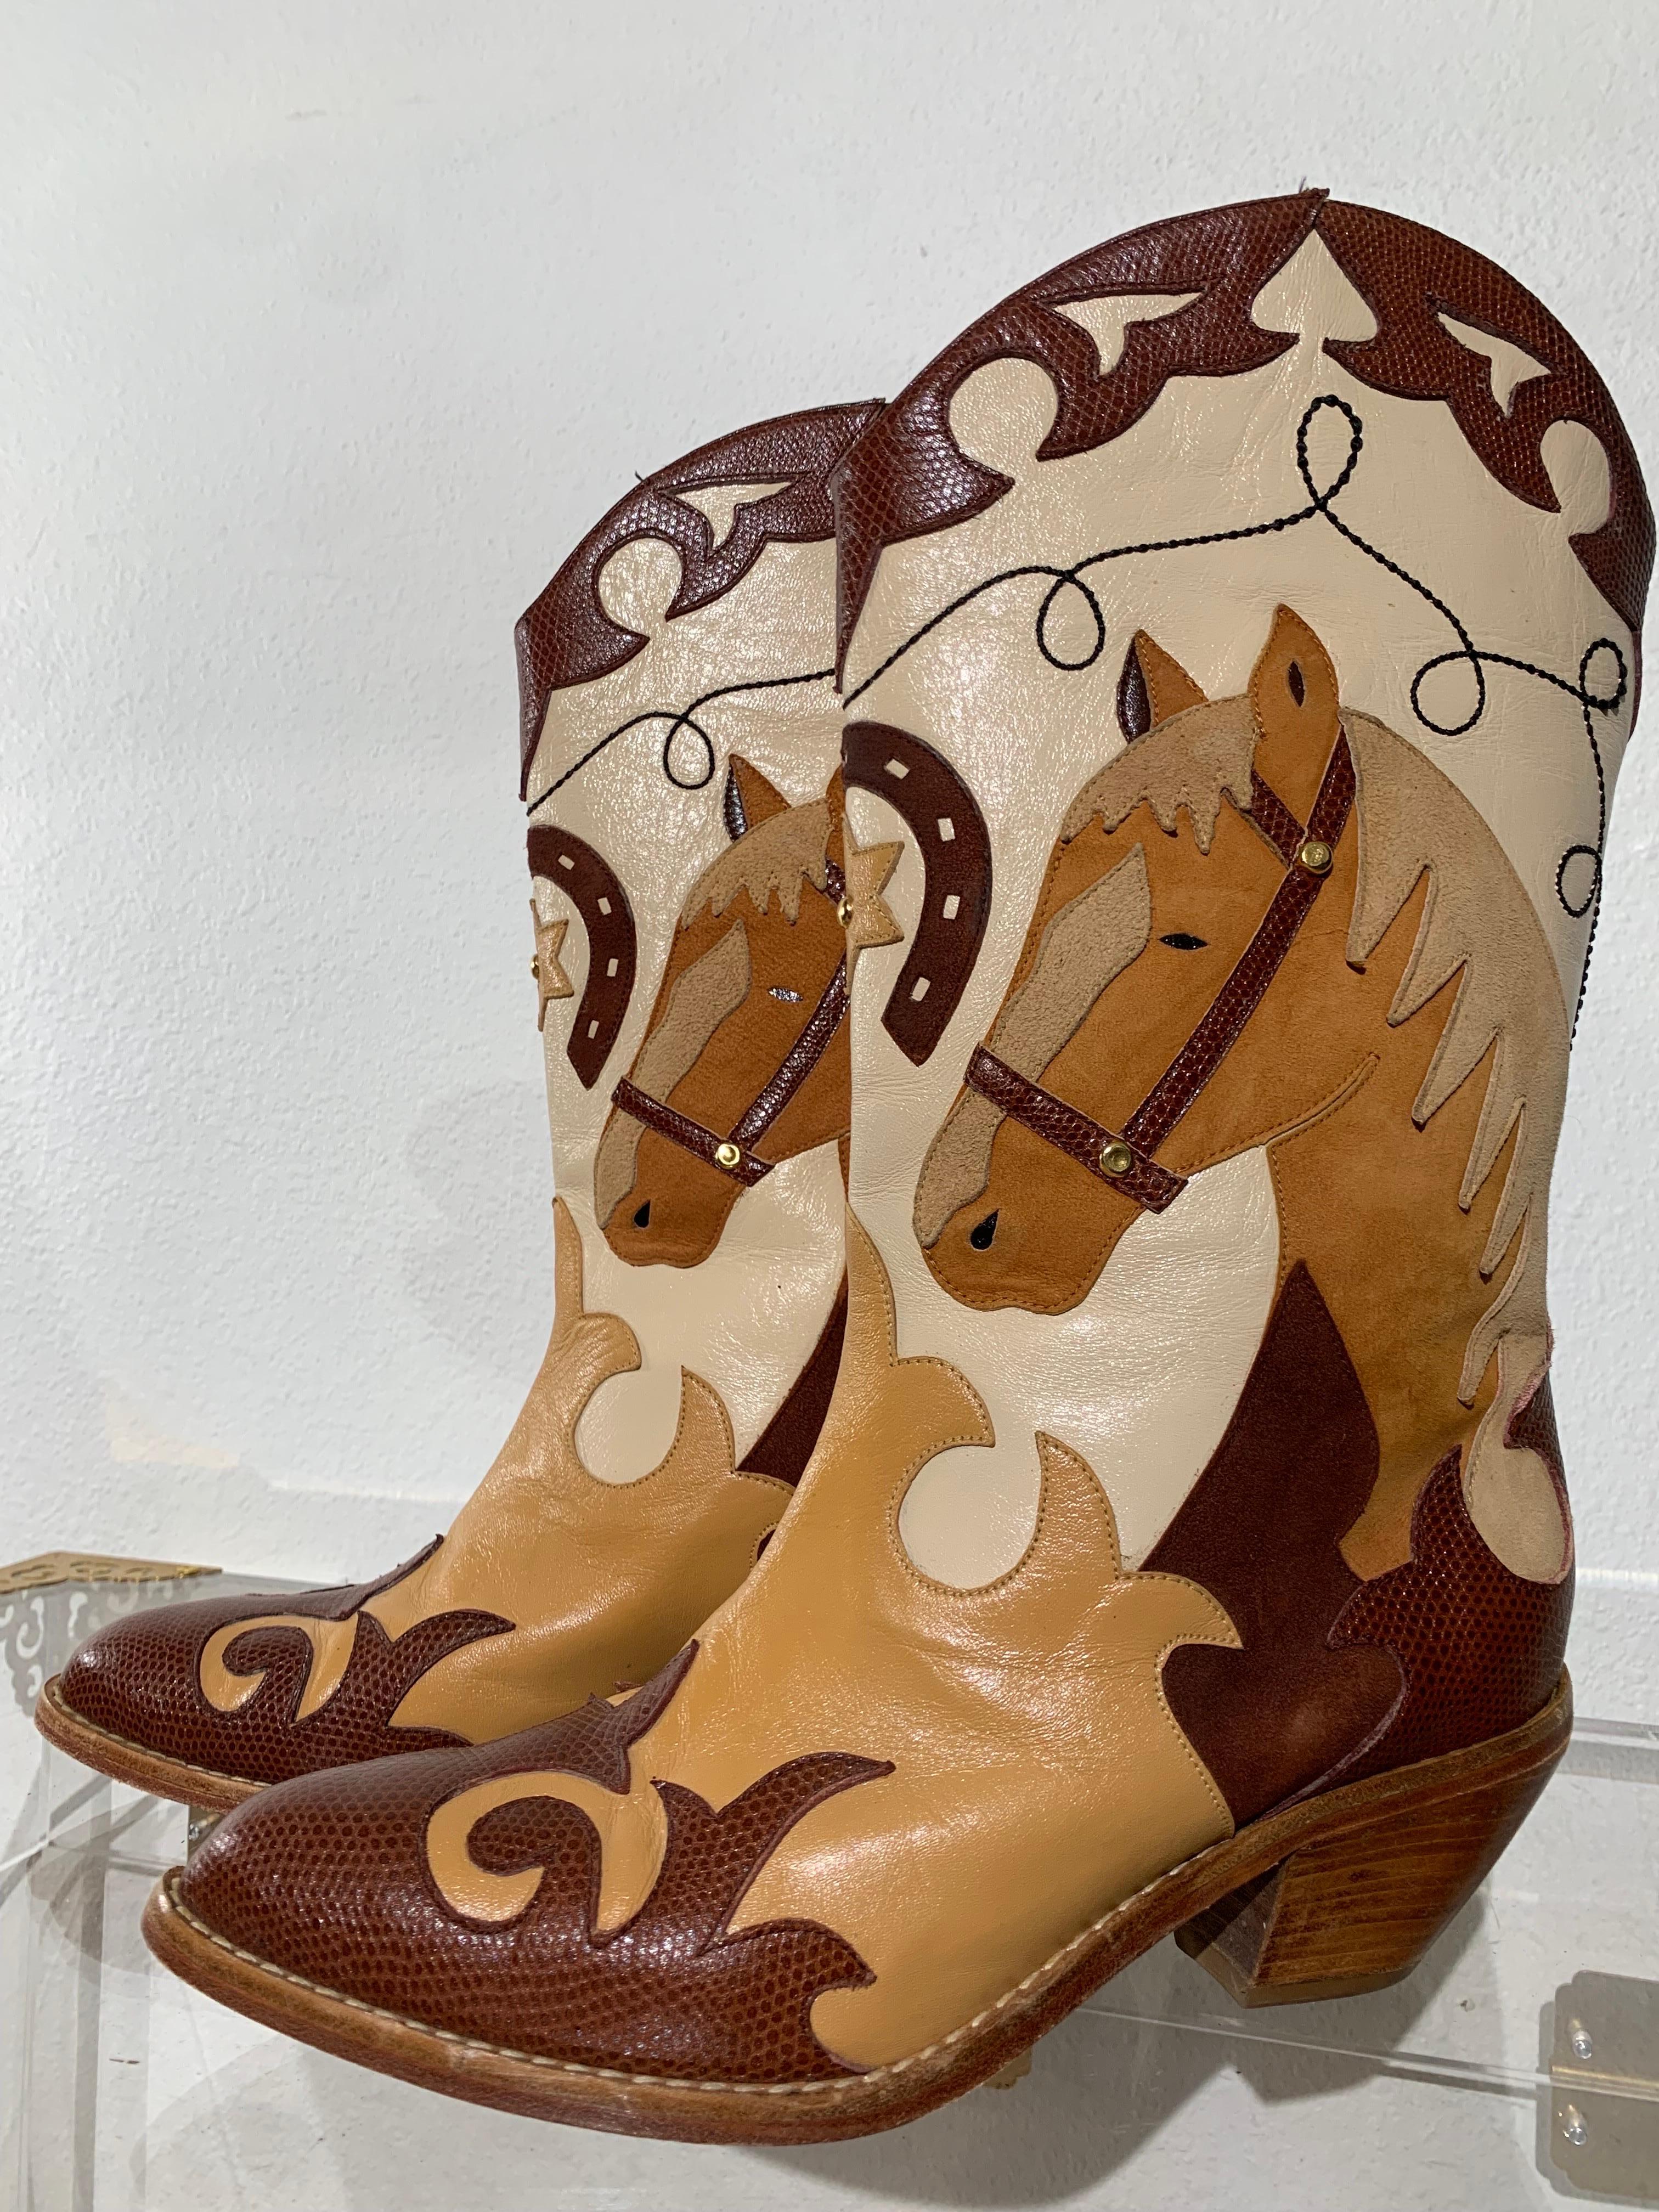 Western Cowboy des années 1980, bottes courtes à motif de cheval, avec applications en cuir :  Bottes de cow-boy labellisées Zalo avec une image de cheval fabuleusement détaillée sur le côté. Bout pointu, 
Bottes à talon cubain, longueur mi-mollet,